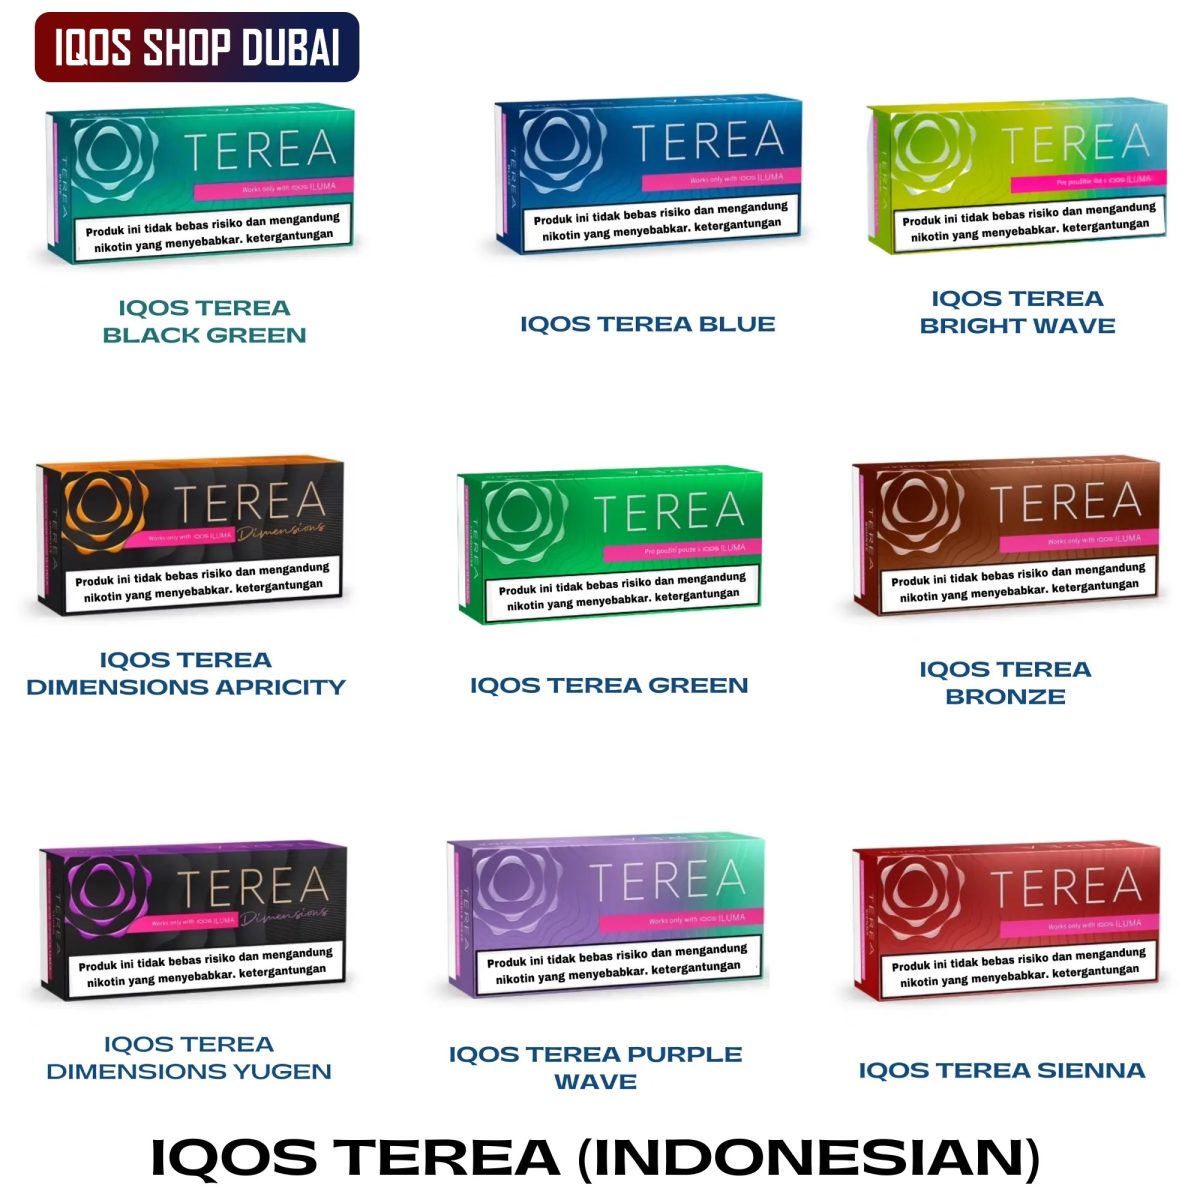 IQOS TEREA (INDONESIAN) IN UAE